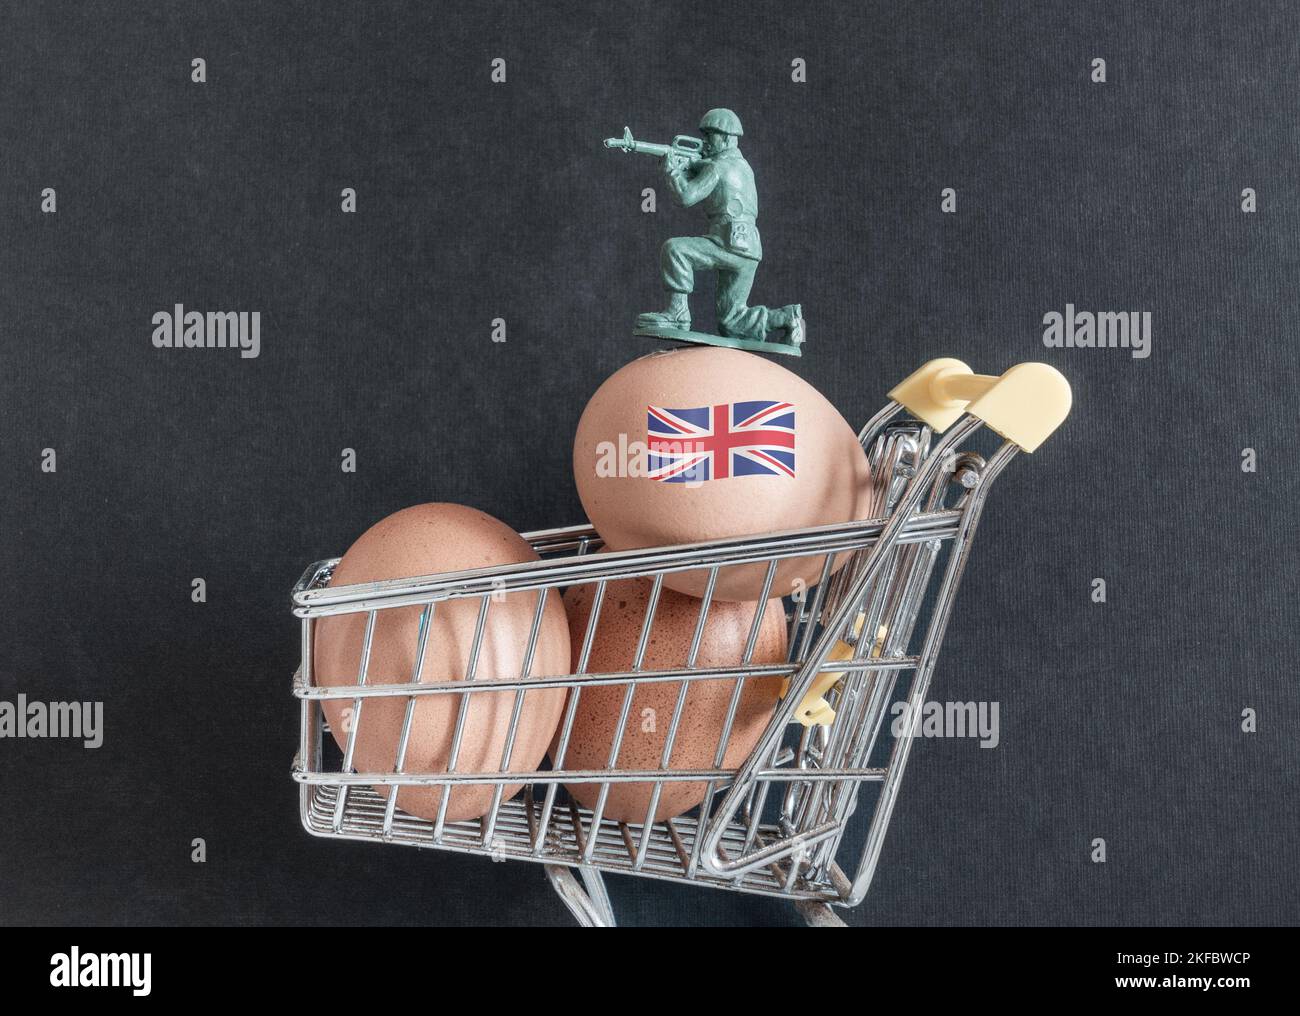 Uova nel carrello della spesa con soldato che custodisce beni di valore. Carenza di uova, aumento dei prezzi delle uova, inflazione, costo della crisi vivente... concetto Foto Stock